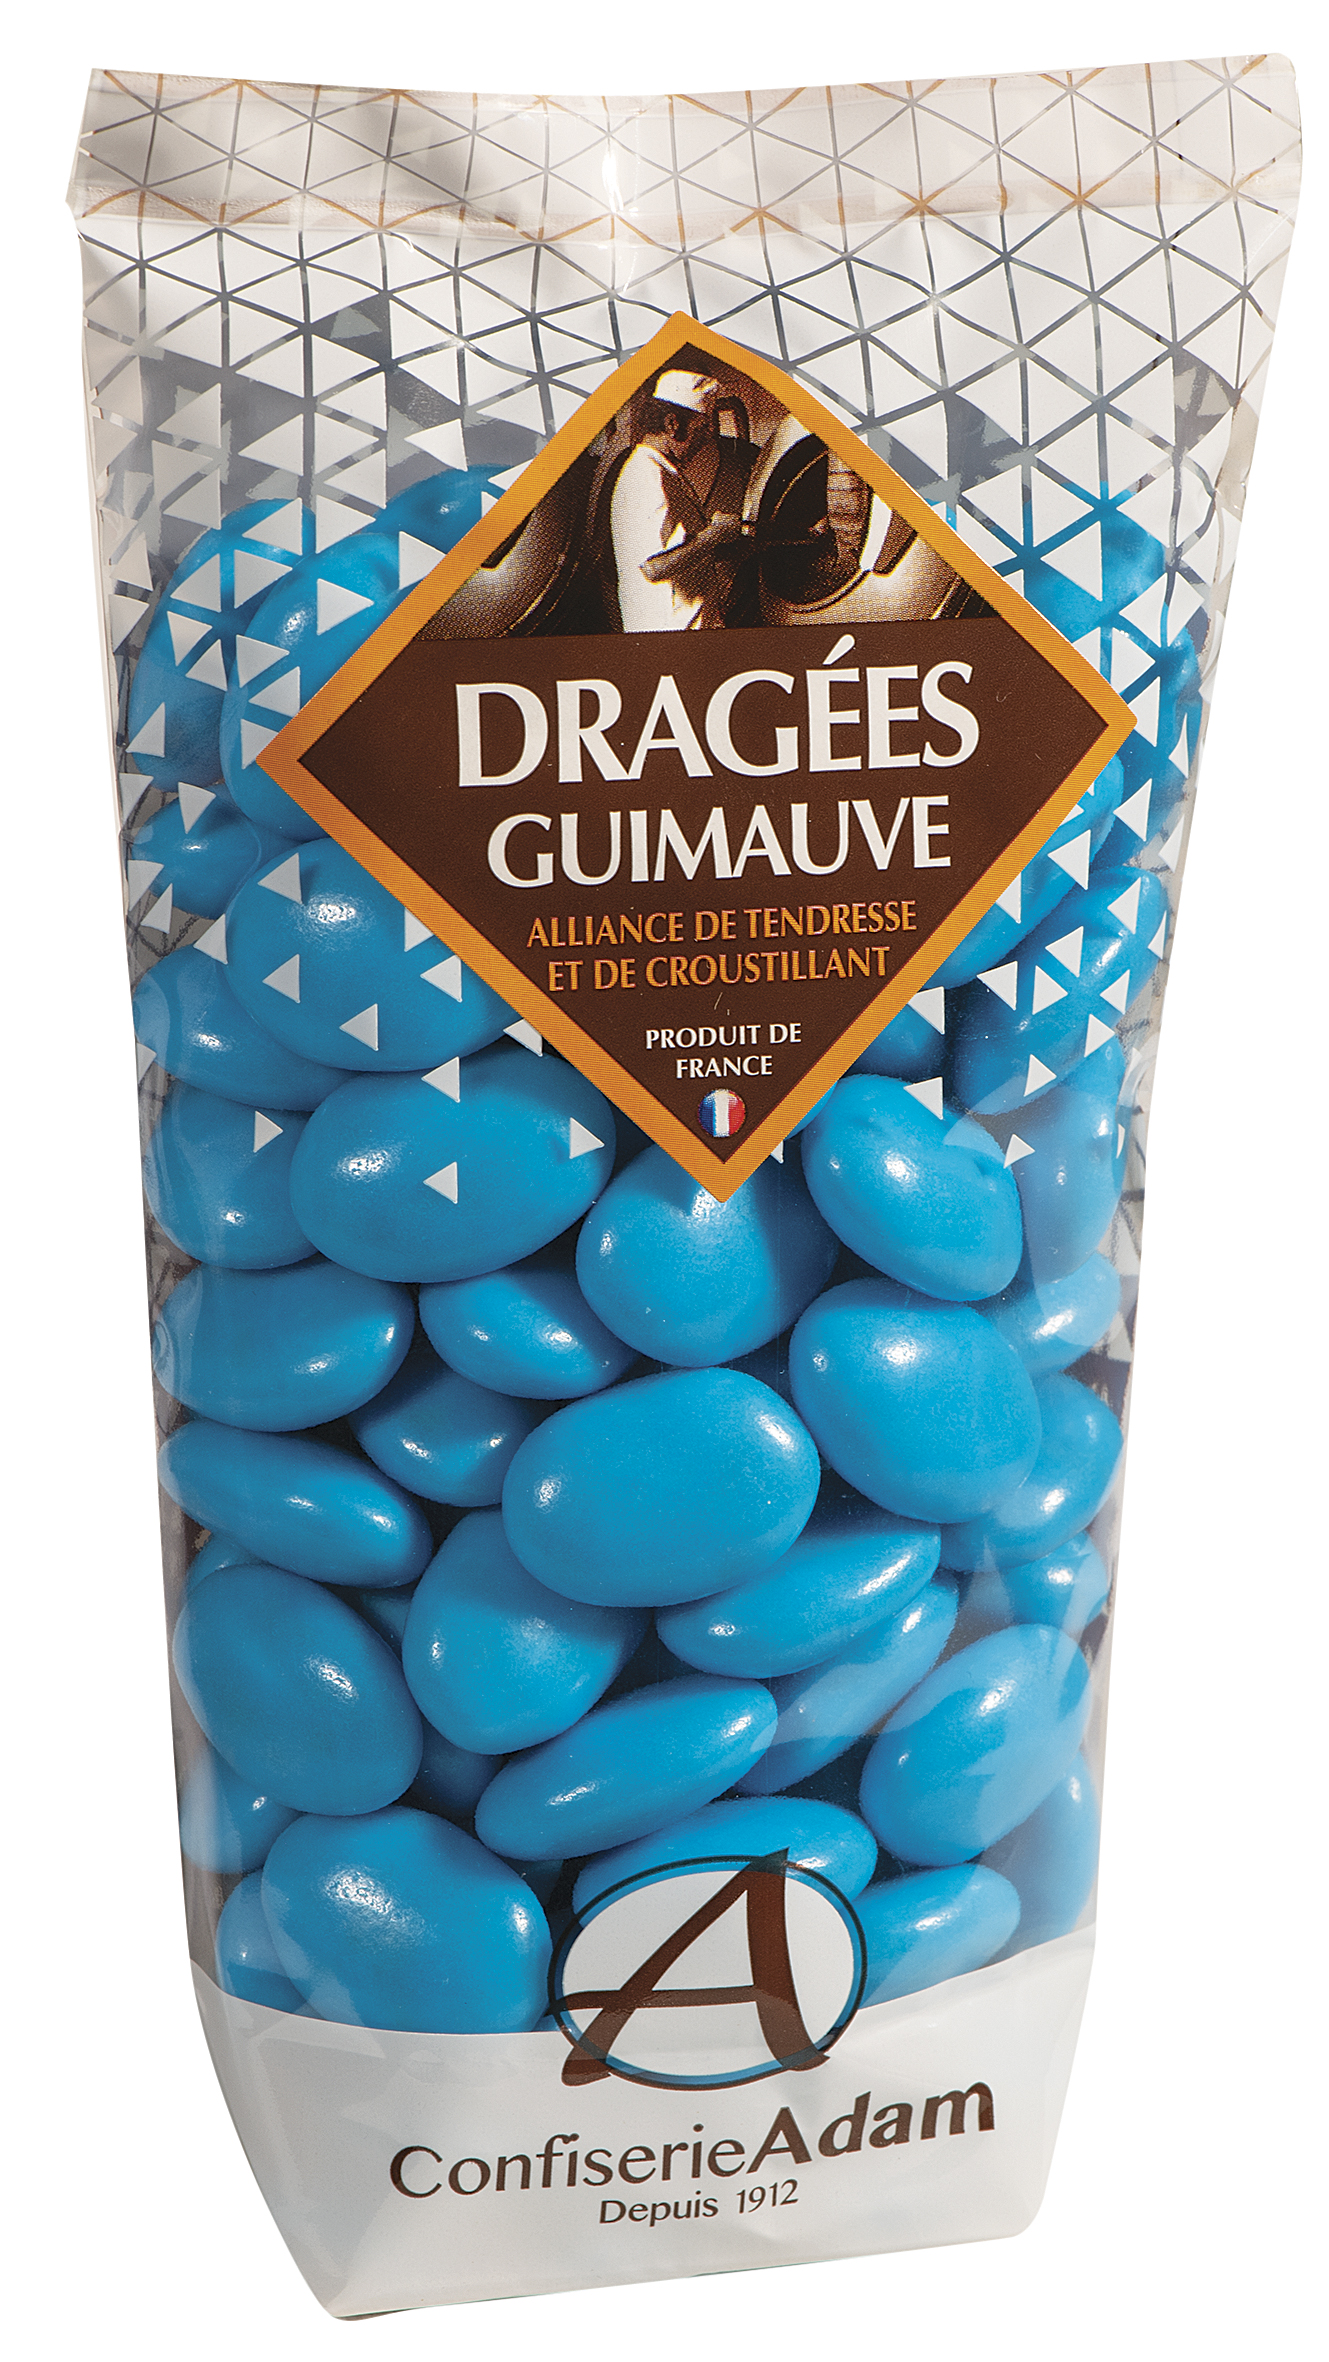 Dragée guimauve - Coloris Turquoise - Confiserie Adam